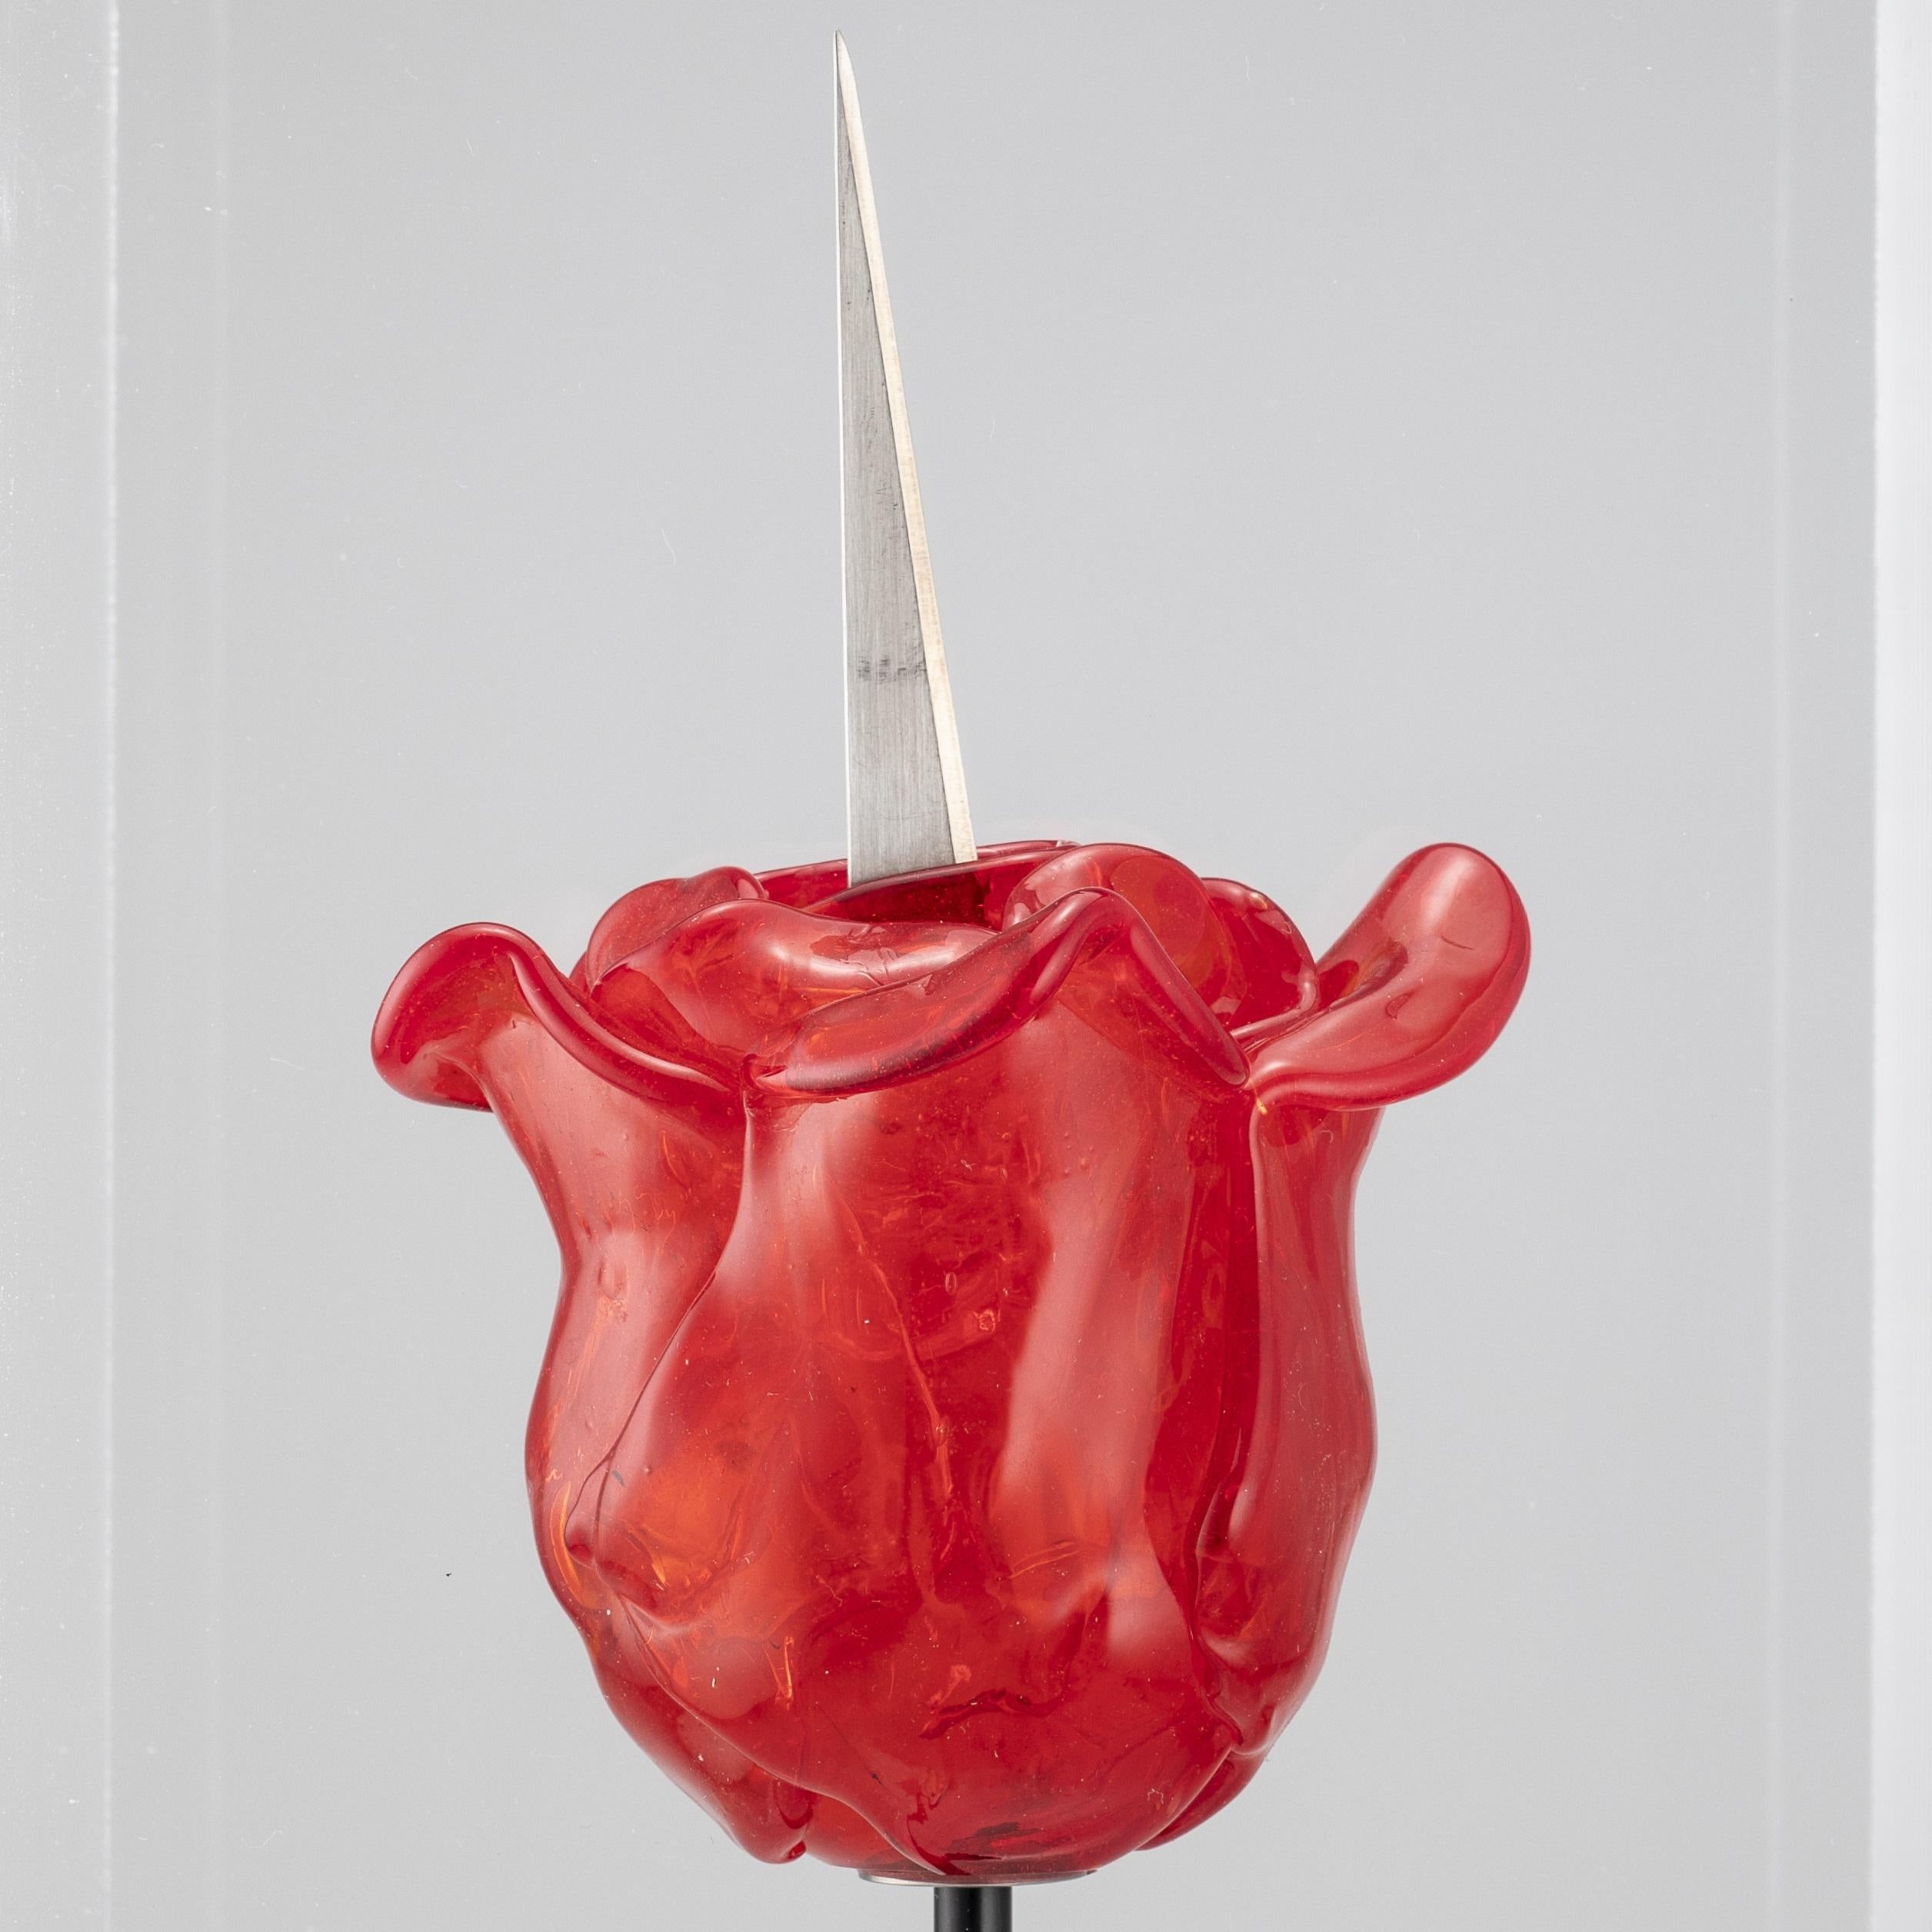 Dans le prolongement de son installation évocatrice de la Biennale de Venise, Bertlmann crée cette sculpture comme un symbole à la fois d'attractivité et de force.

Rose-couteau de Renate Bertlmann 
Verre de Murano et métal, protégé par un étui en